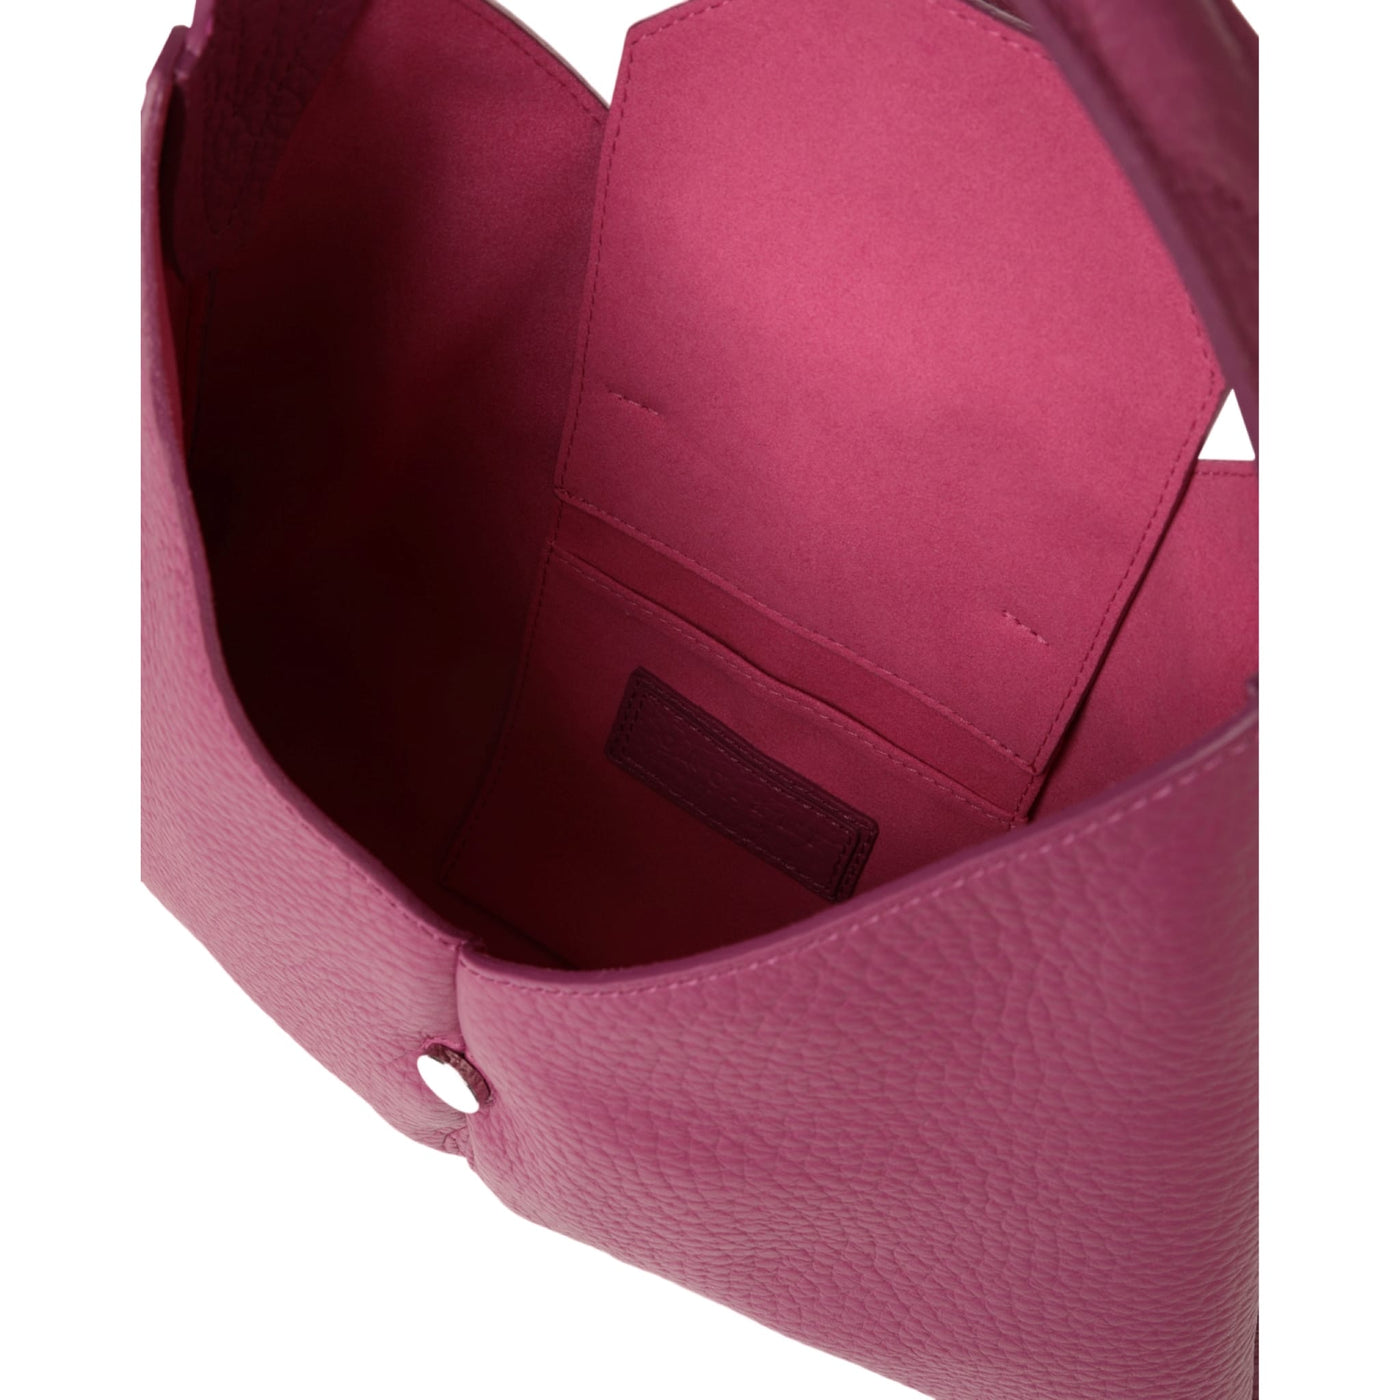 Women's bag with adjustable shoulder strap